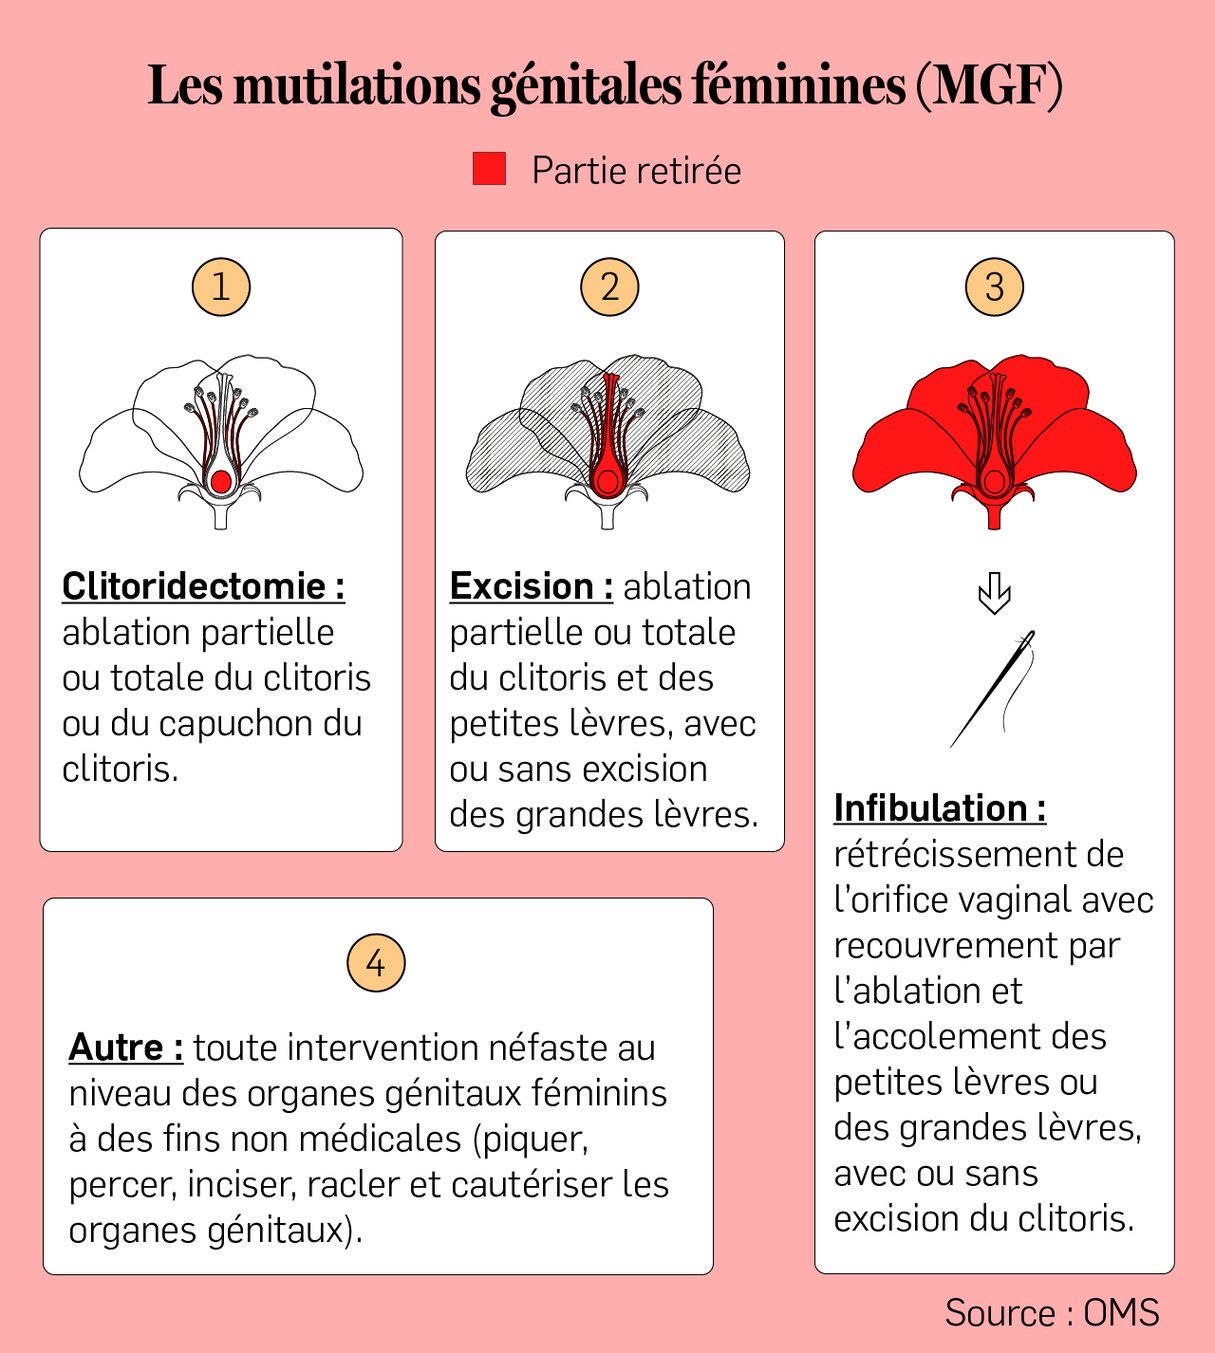 L'excision est une forme de mutilation génitale féminine, que l'OMS définit comme l'ablation partielle ou totale des petites lèvres. &copy; Infographie : Maÿlis DUDOUET